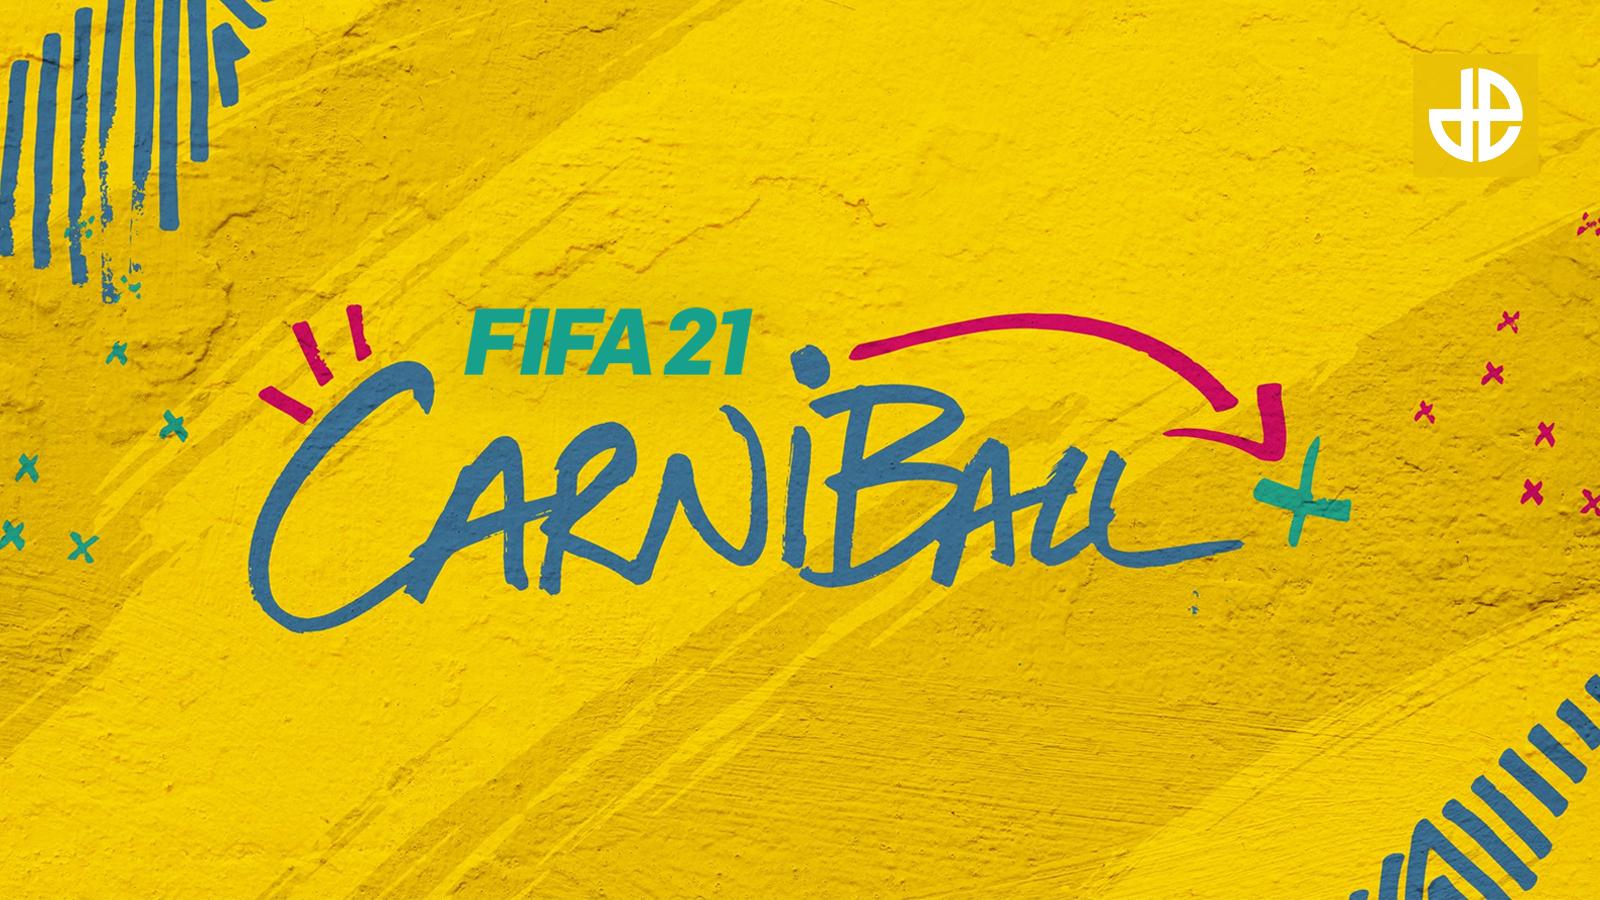 FIFA 21 Carniball promo event FUT countdown.